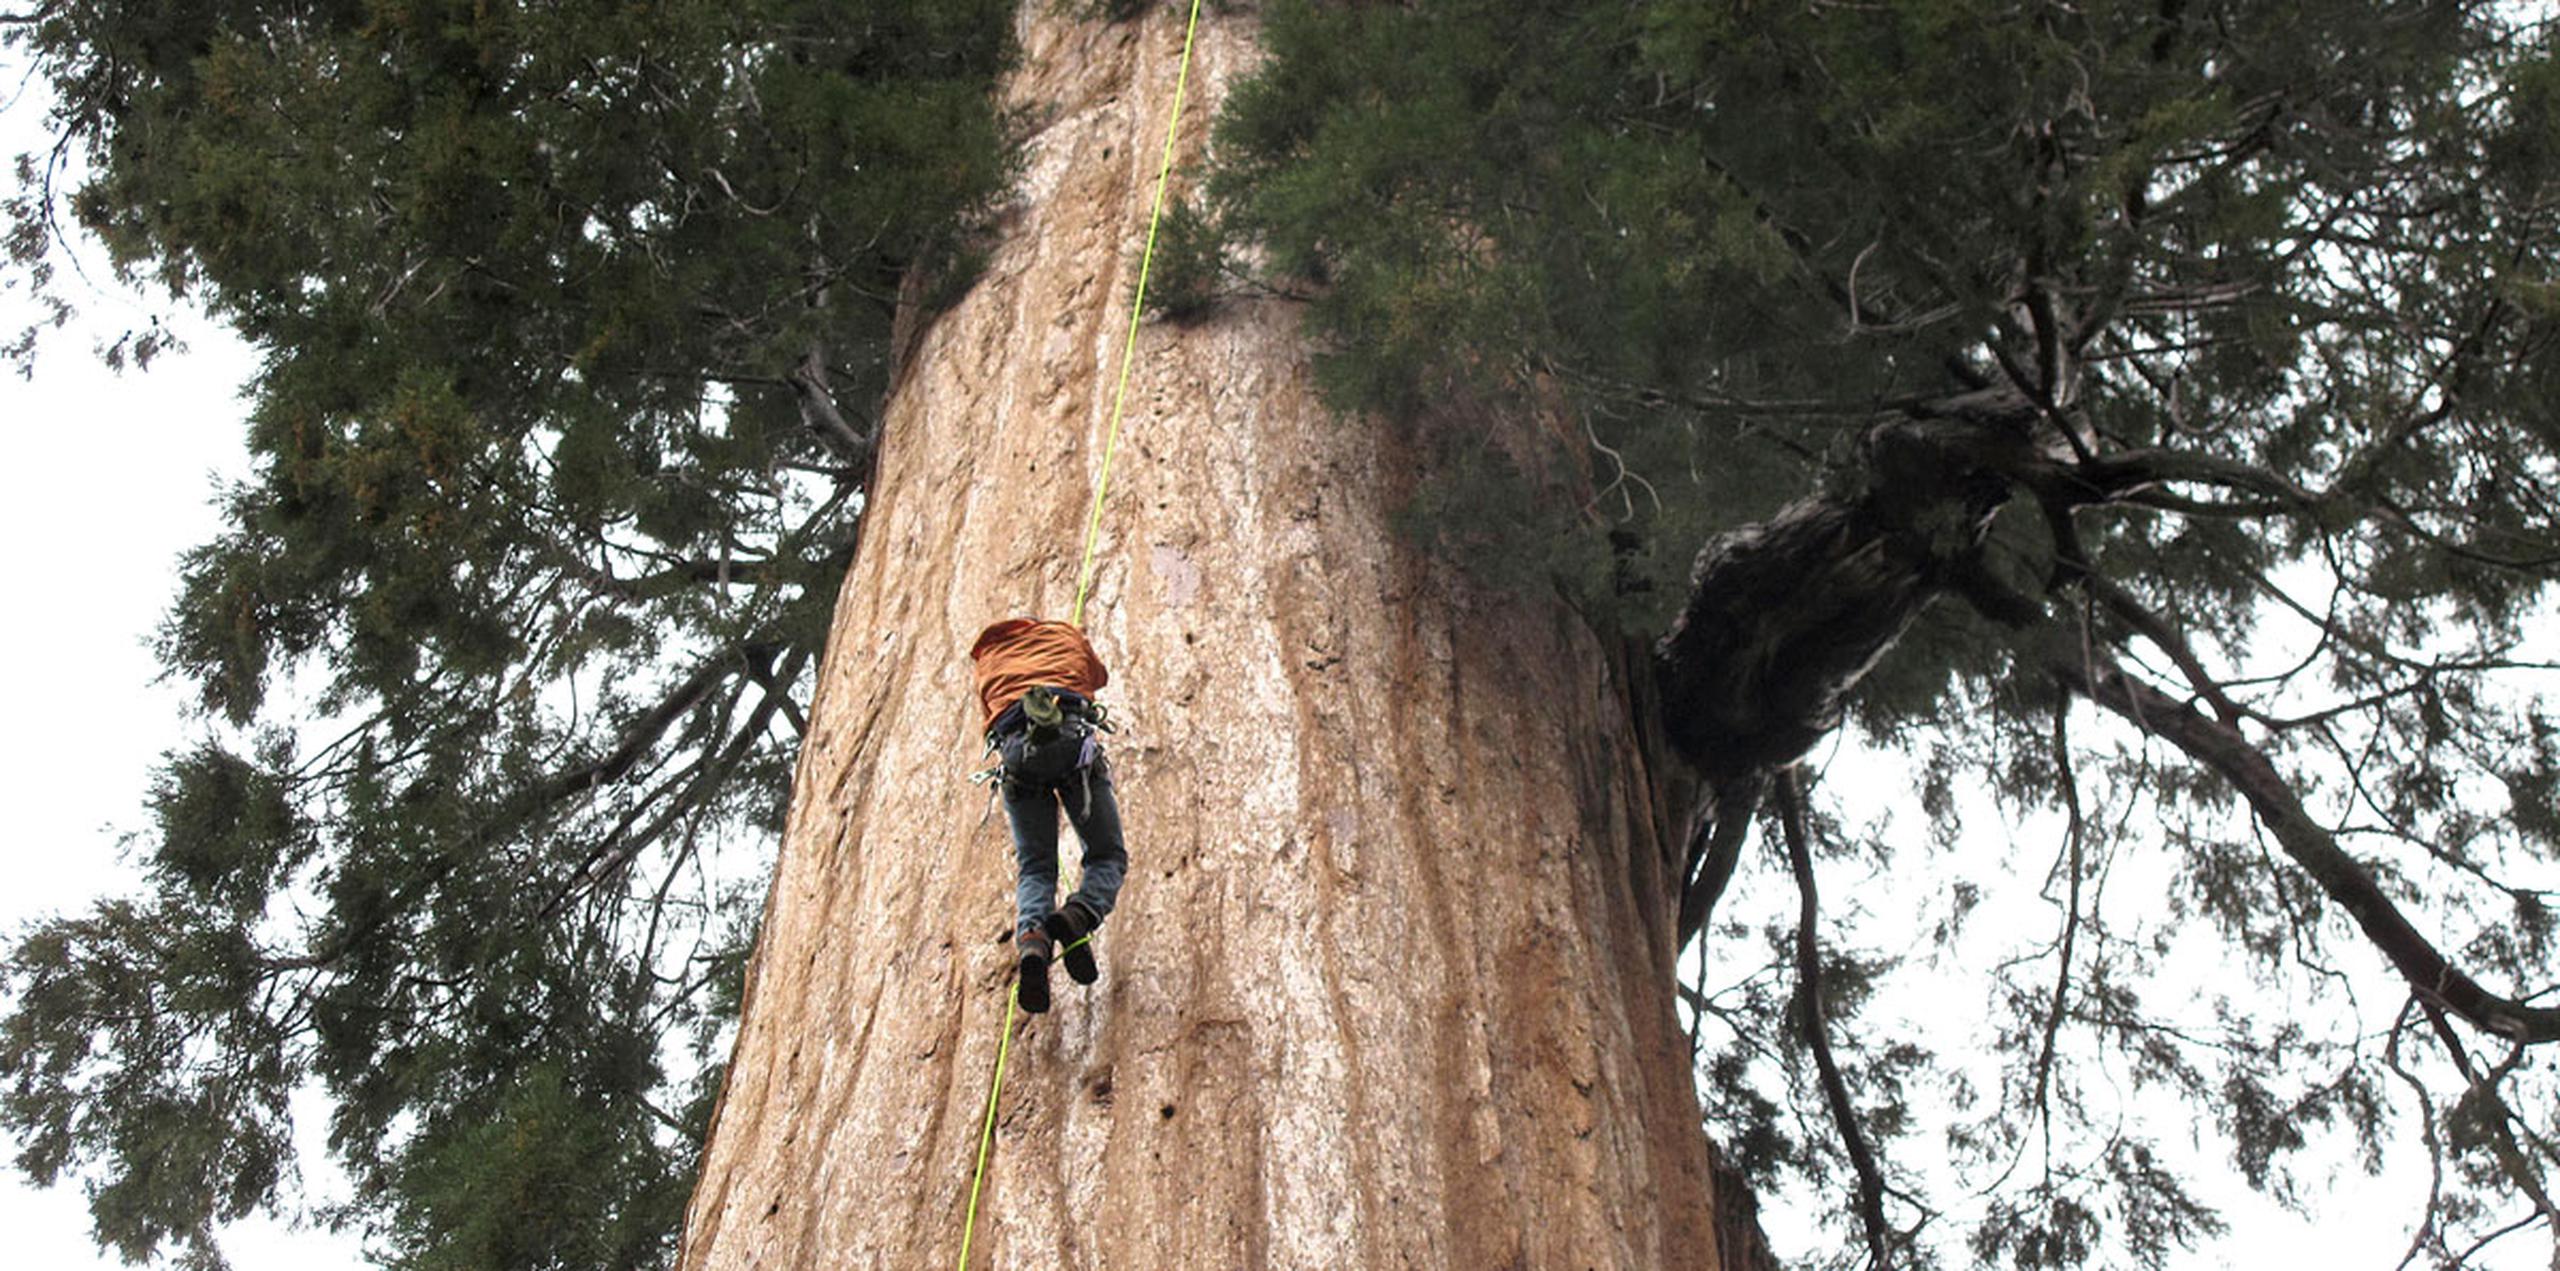 Las secuoyas que crecen en la Sierra están entre los árboles más grandes y ancianos del mundo, y en algunos casos alcanzan los 300 pies de altura y hasta 3,000 años de edad. (AP)